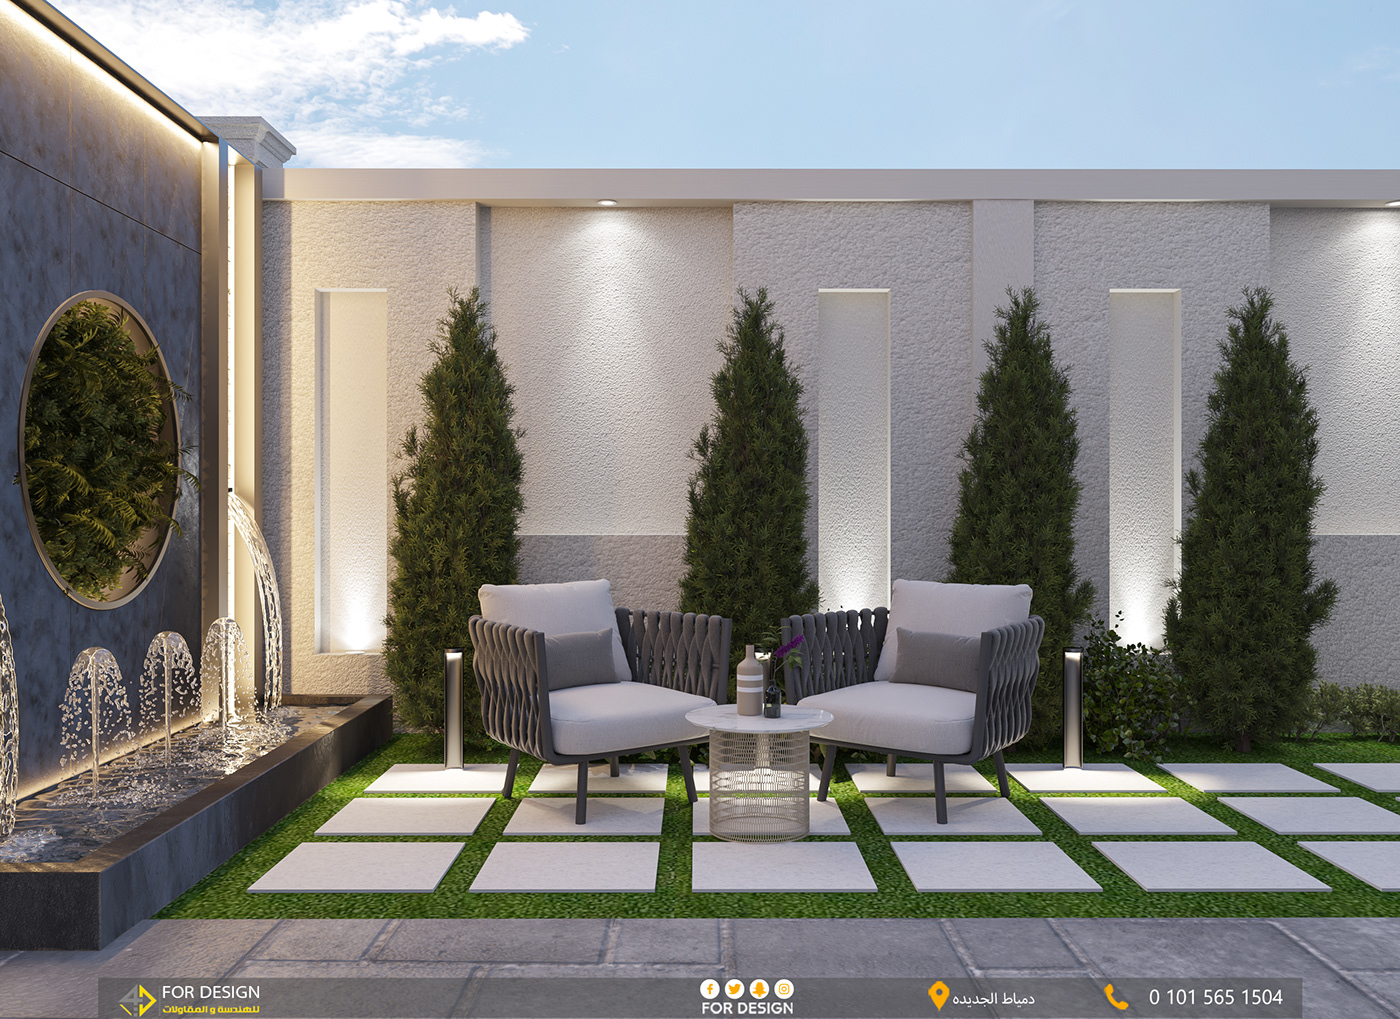 architecture exterior Render 3ds max vray Landscape design garden home modern